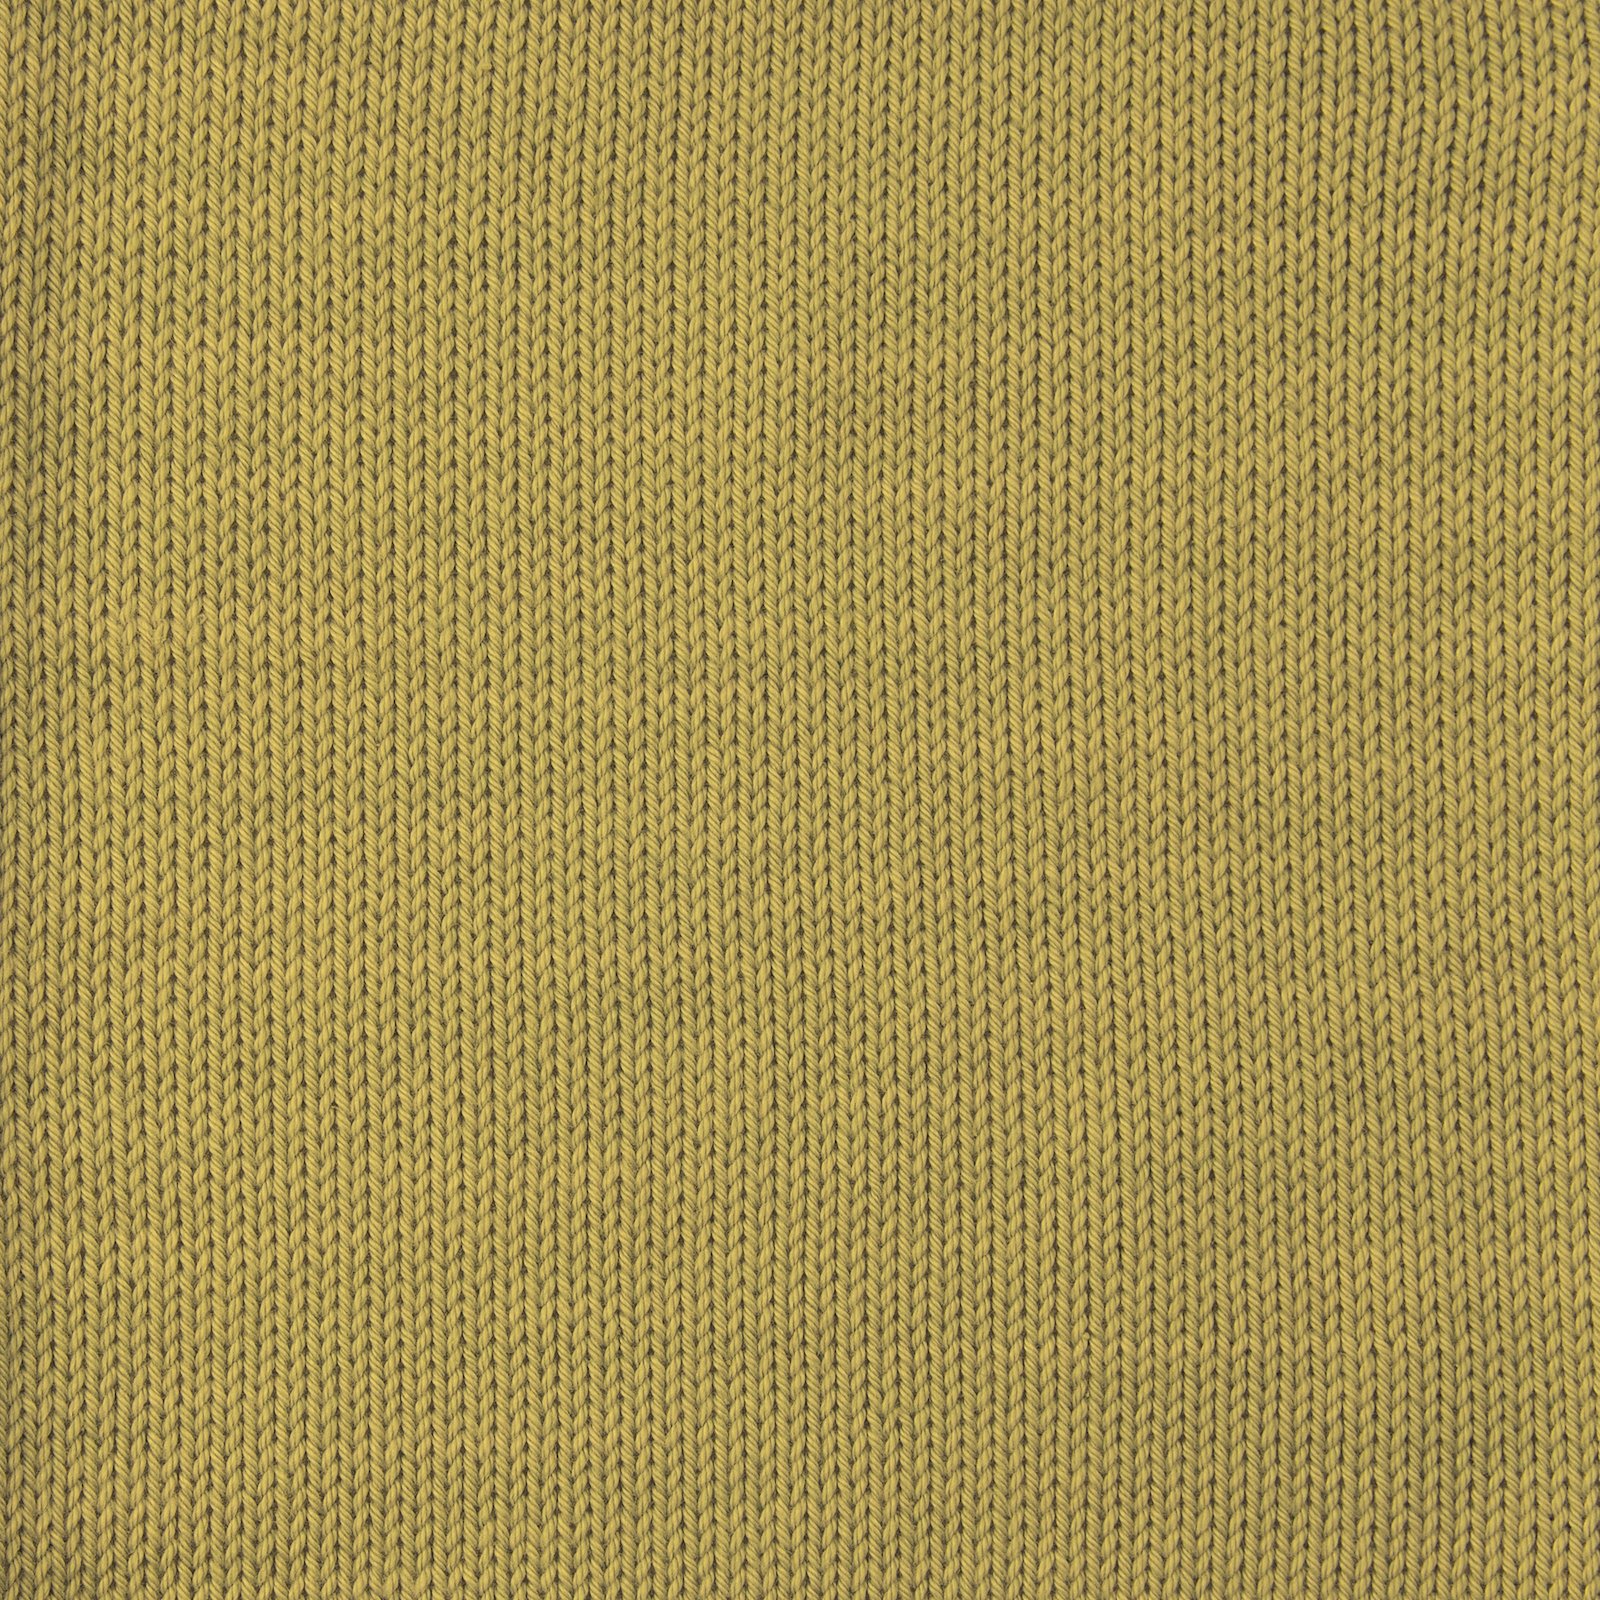 FRAYA, 100% cotton 8/4  yarn  "Colourful", olive 90060033_sskit